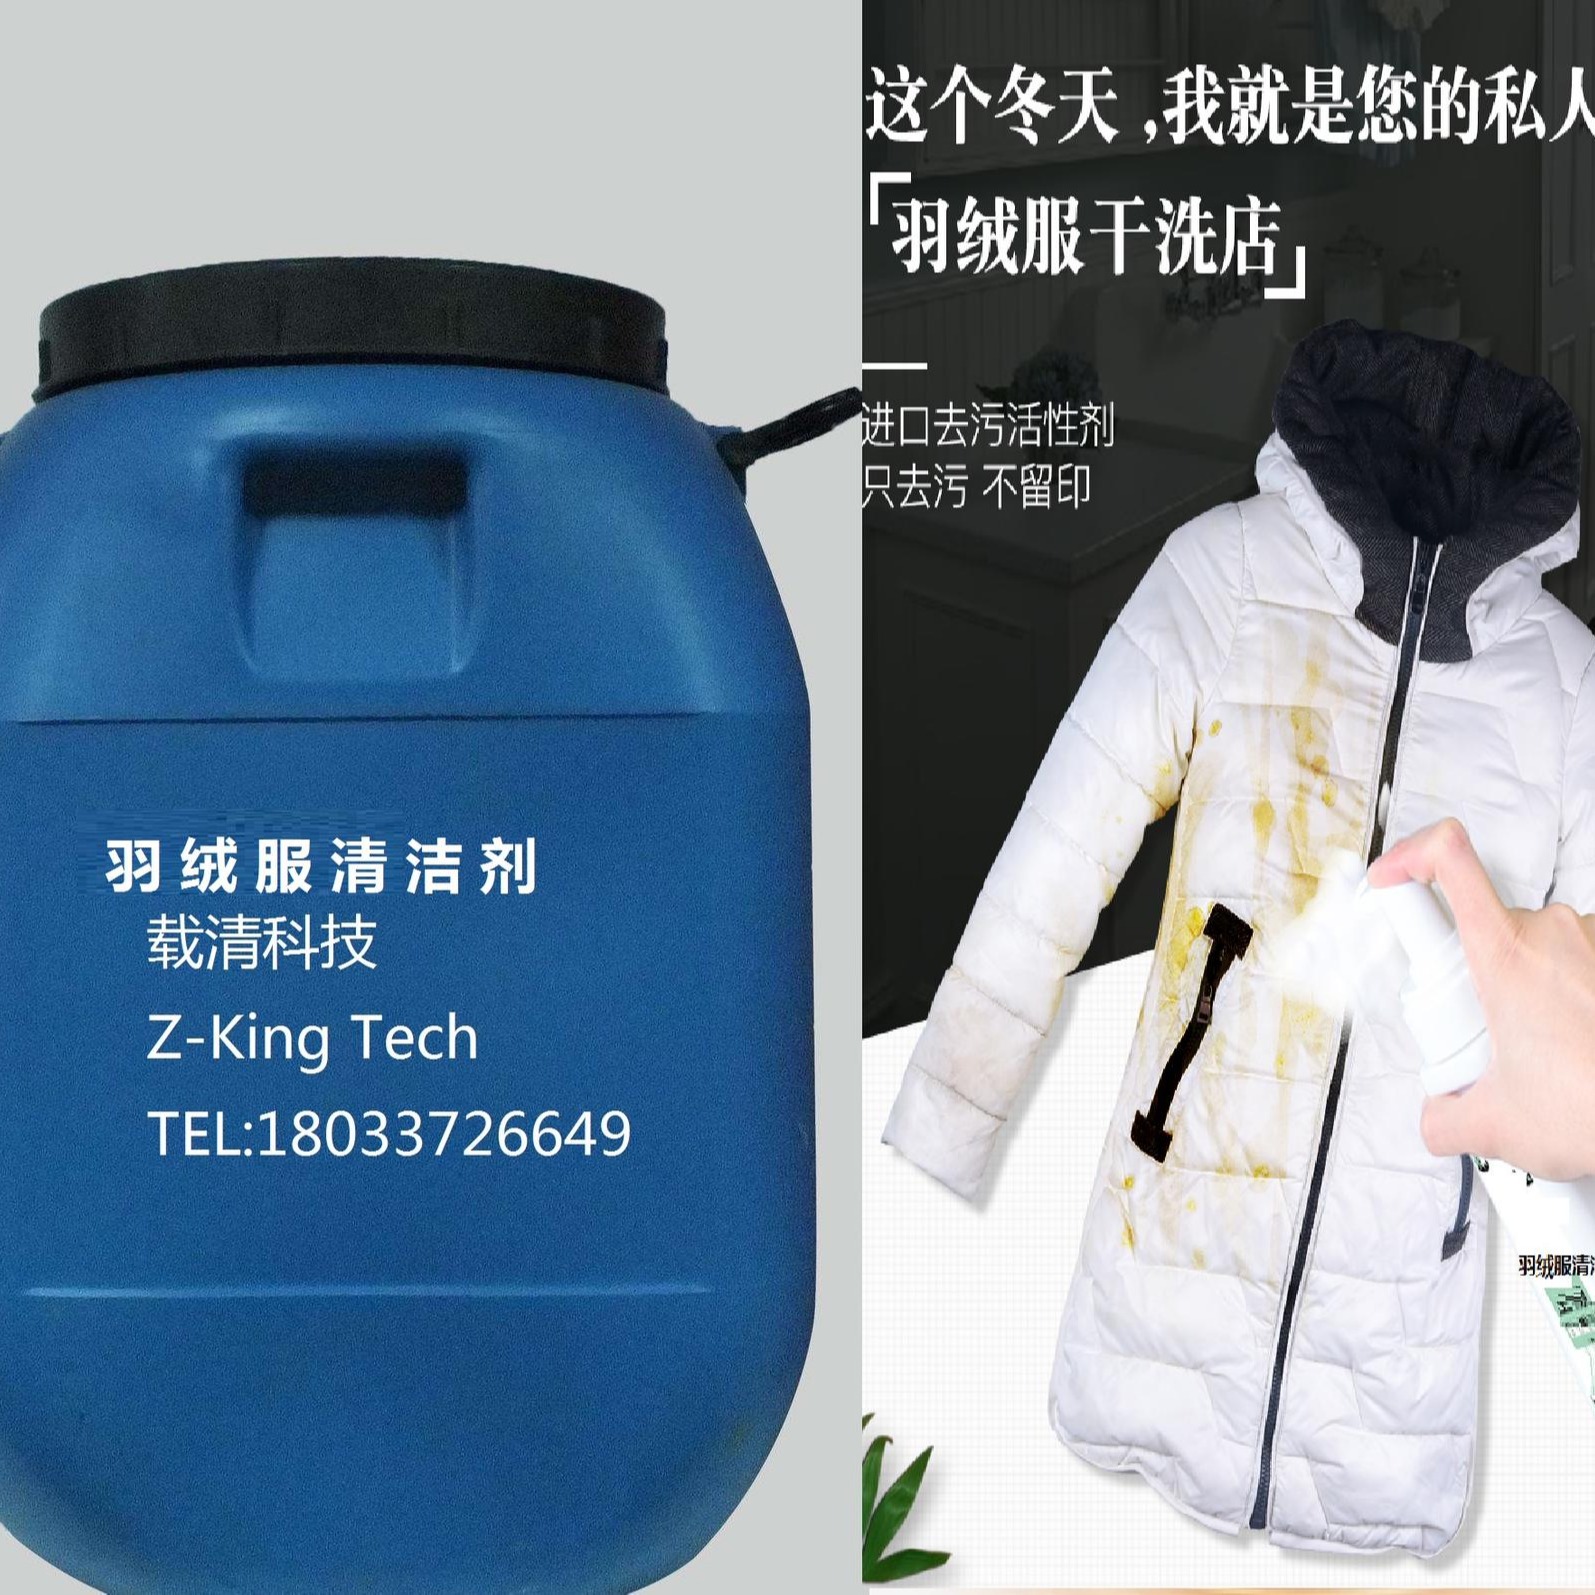 ZK1201 kg 羽绒服清洁湿巾 25元 羽绒服清洁剂 载清科技 桶装羽绒服清洁剂